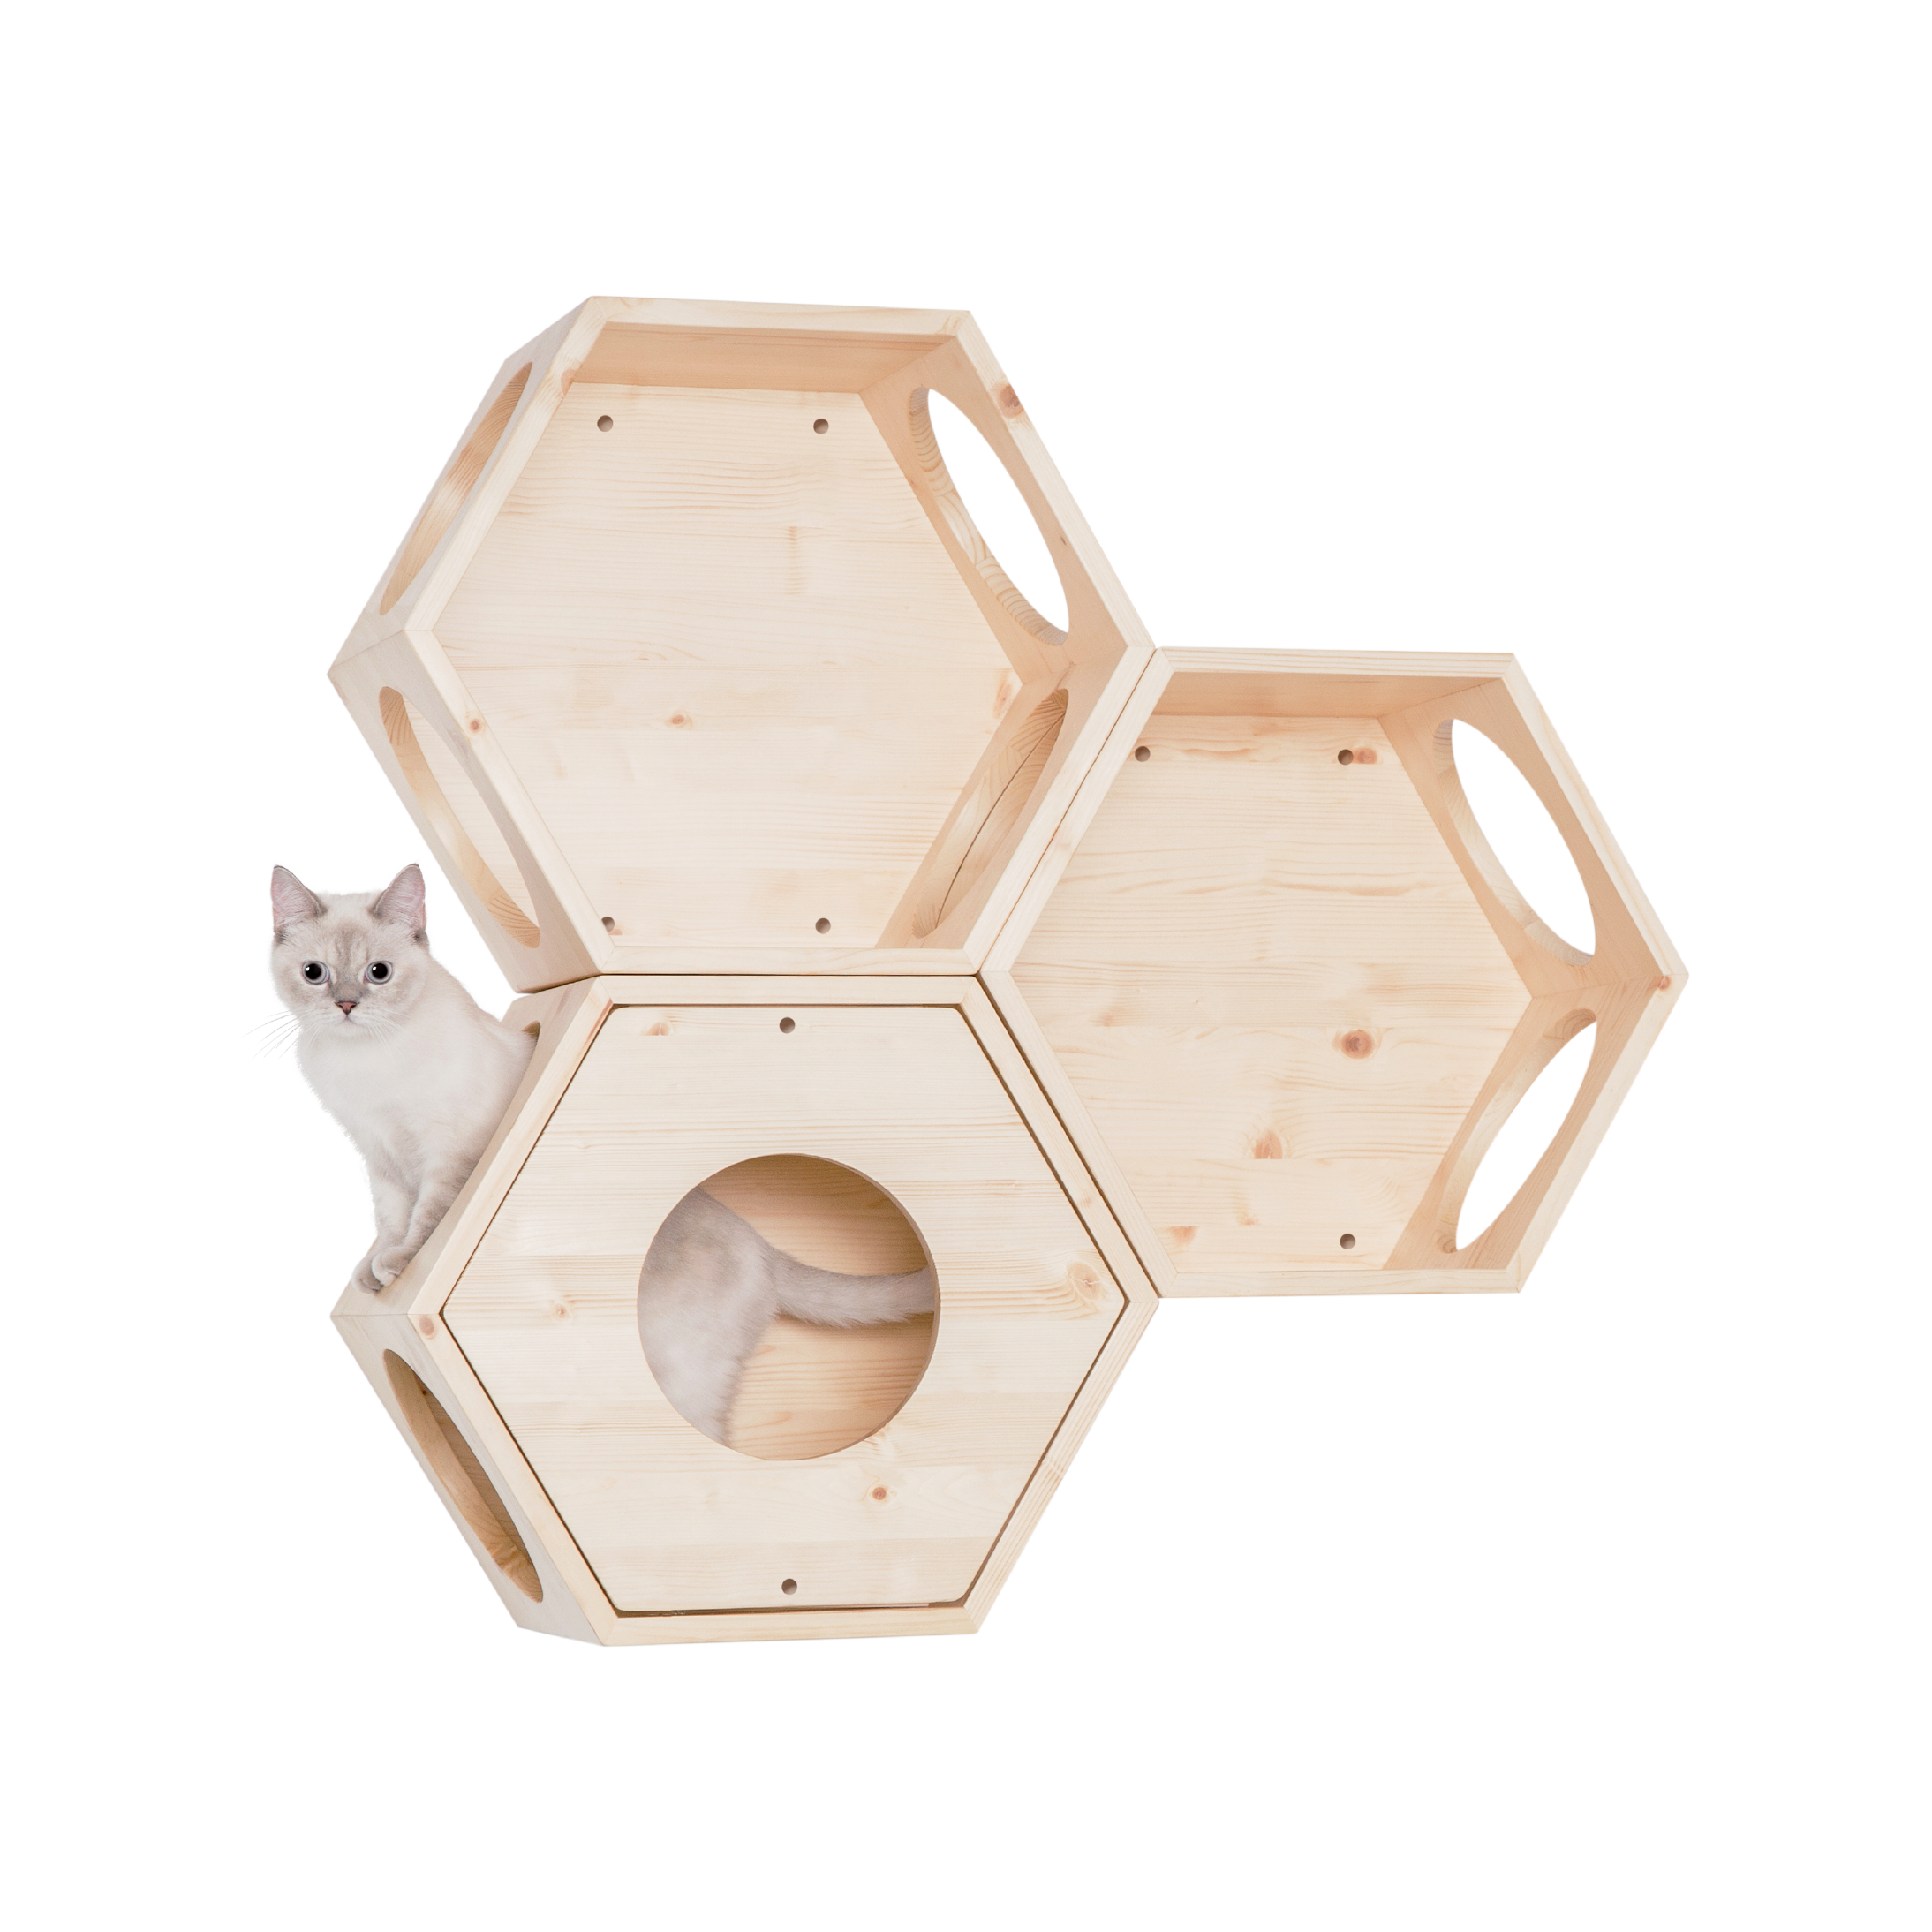 パイン無垢材で作られた壁掛けタイプのキャットタワー。六角形で四面に穴を開けているので、猫は好きな場所から出入りができます。複数繋げることにより、トンネルのようなキャットウォークを楽しめることもできます。